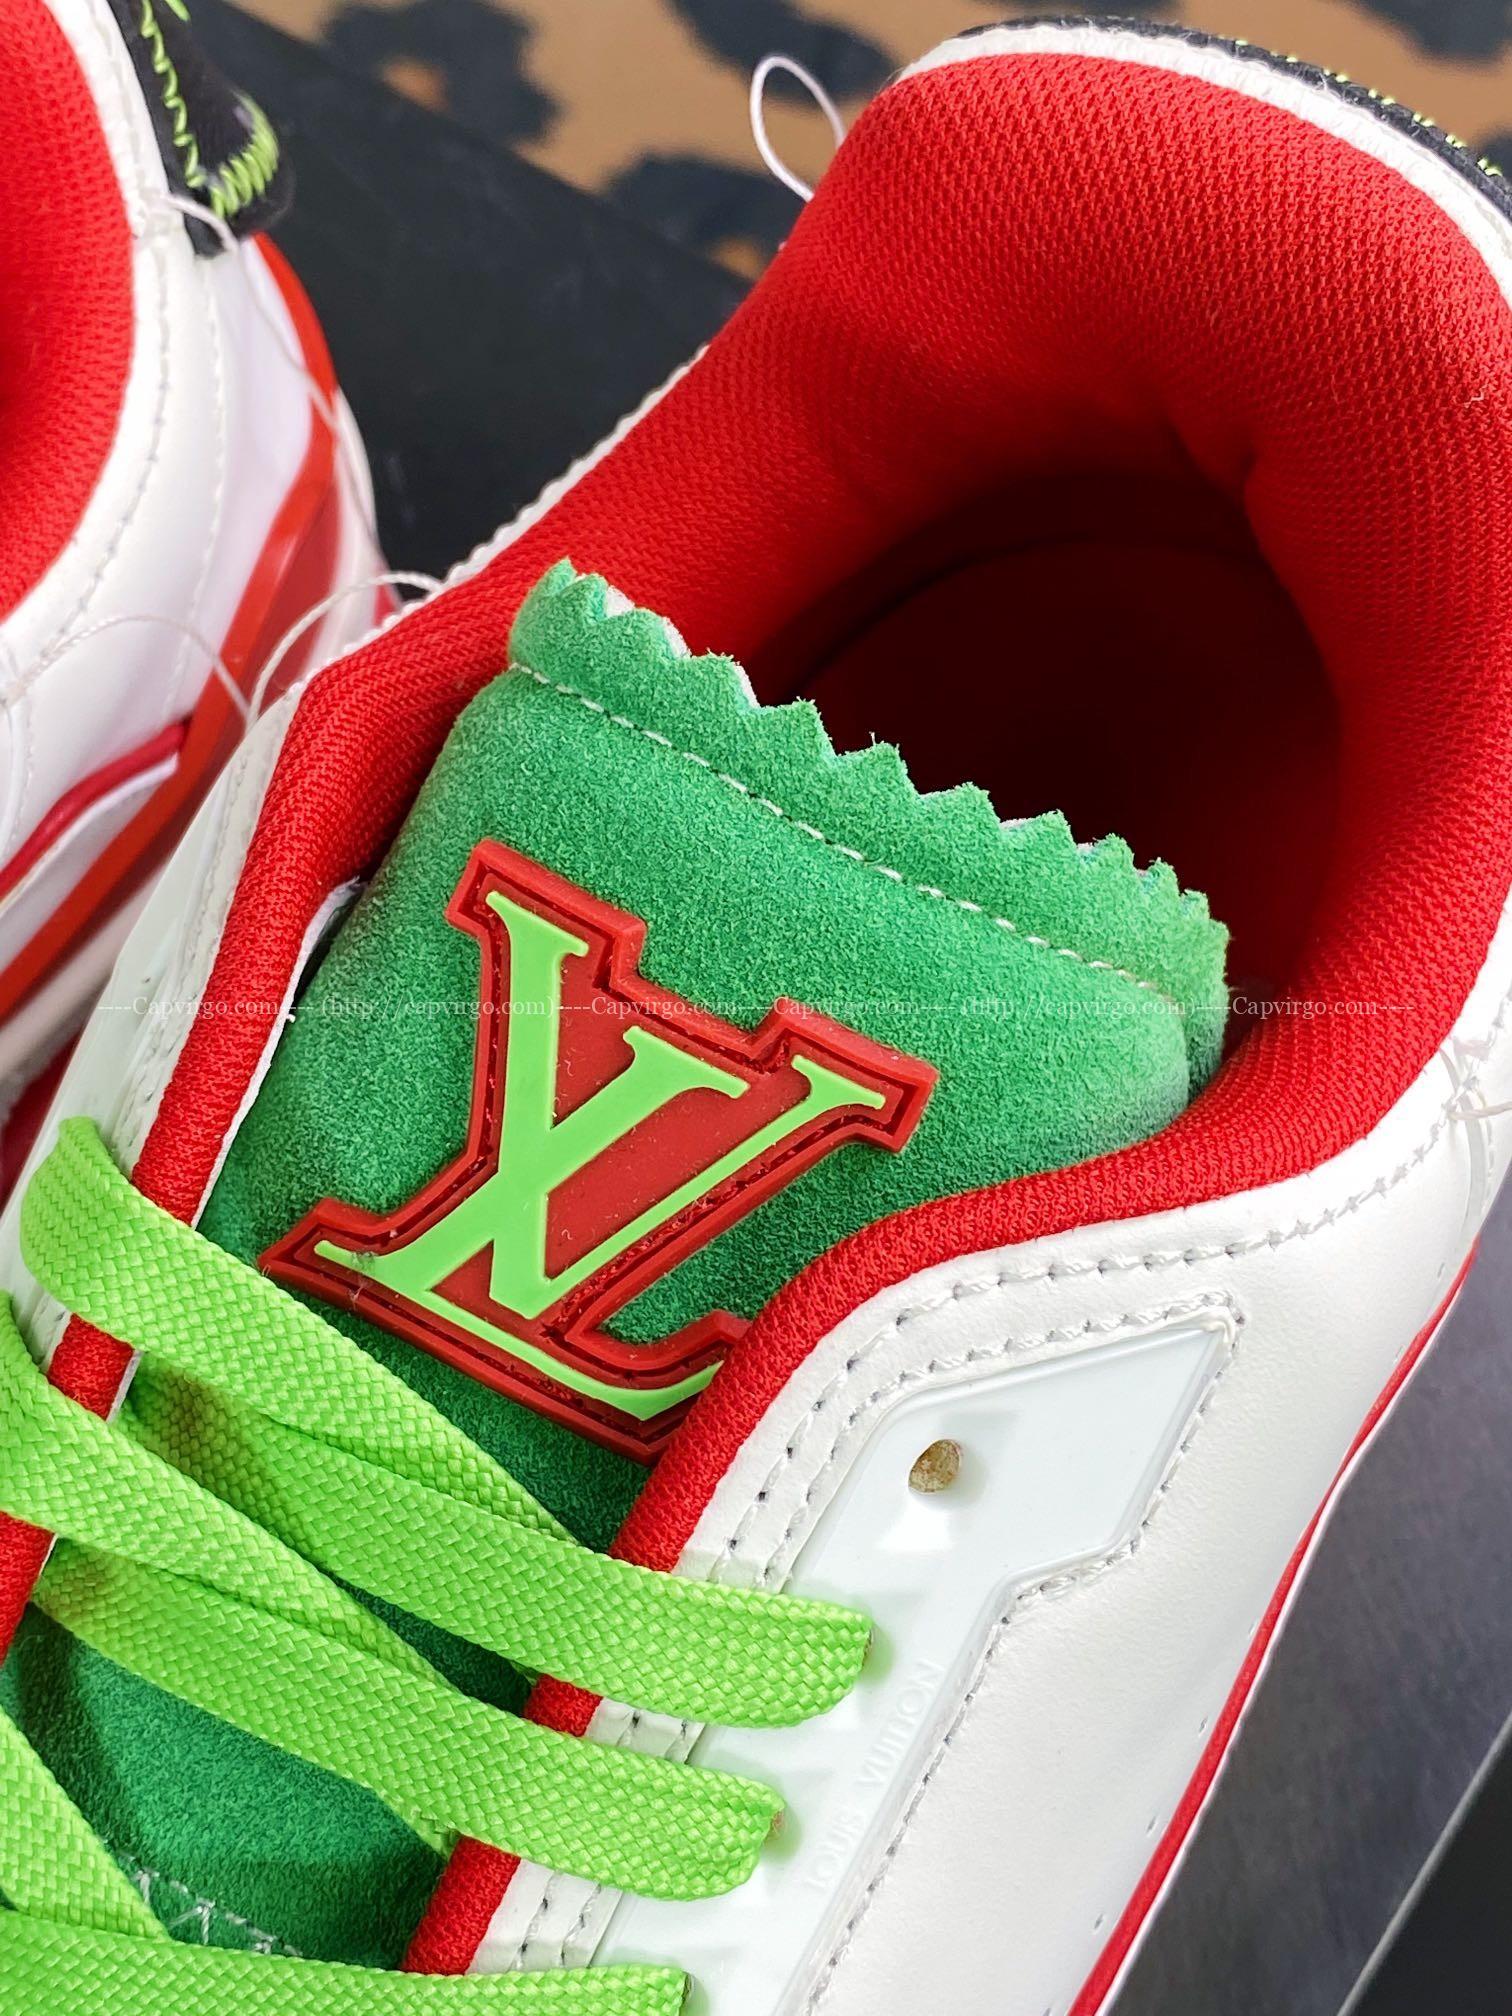 Giày thể thao Louis Vuitton (LV) siêu cấp phối màu trắng đỏ xanh